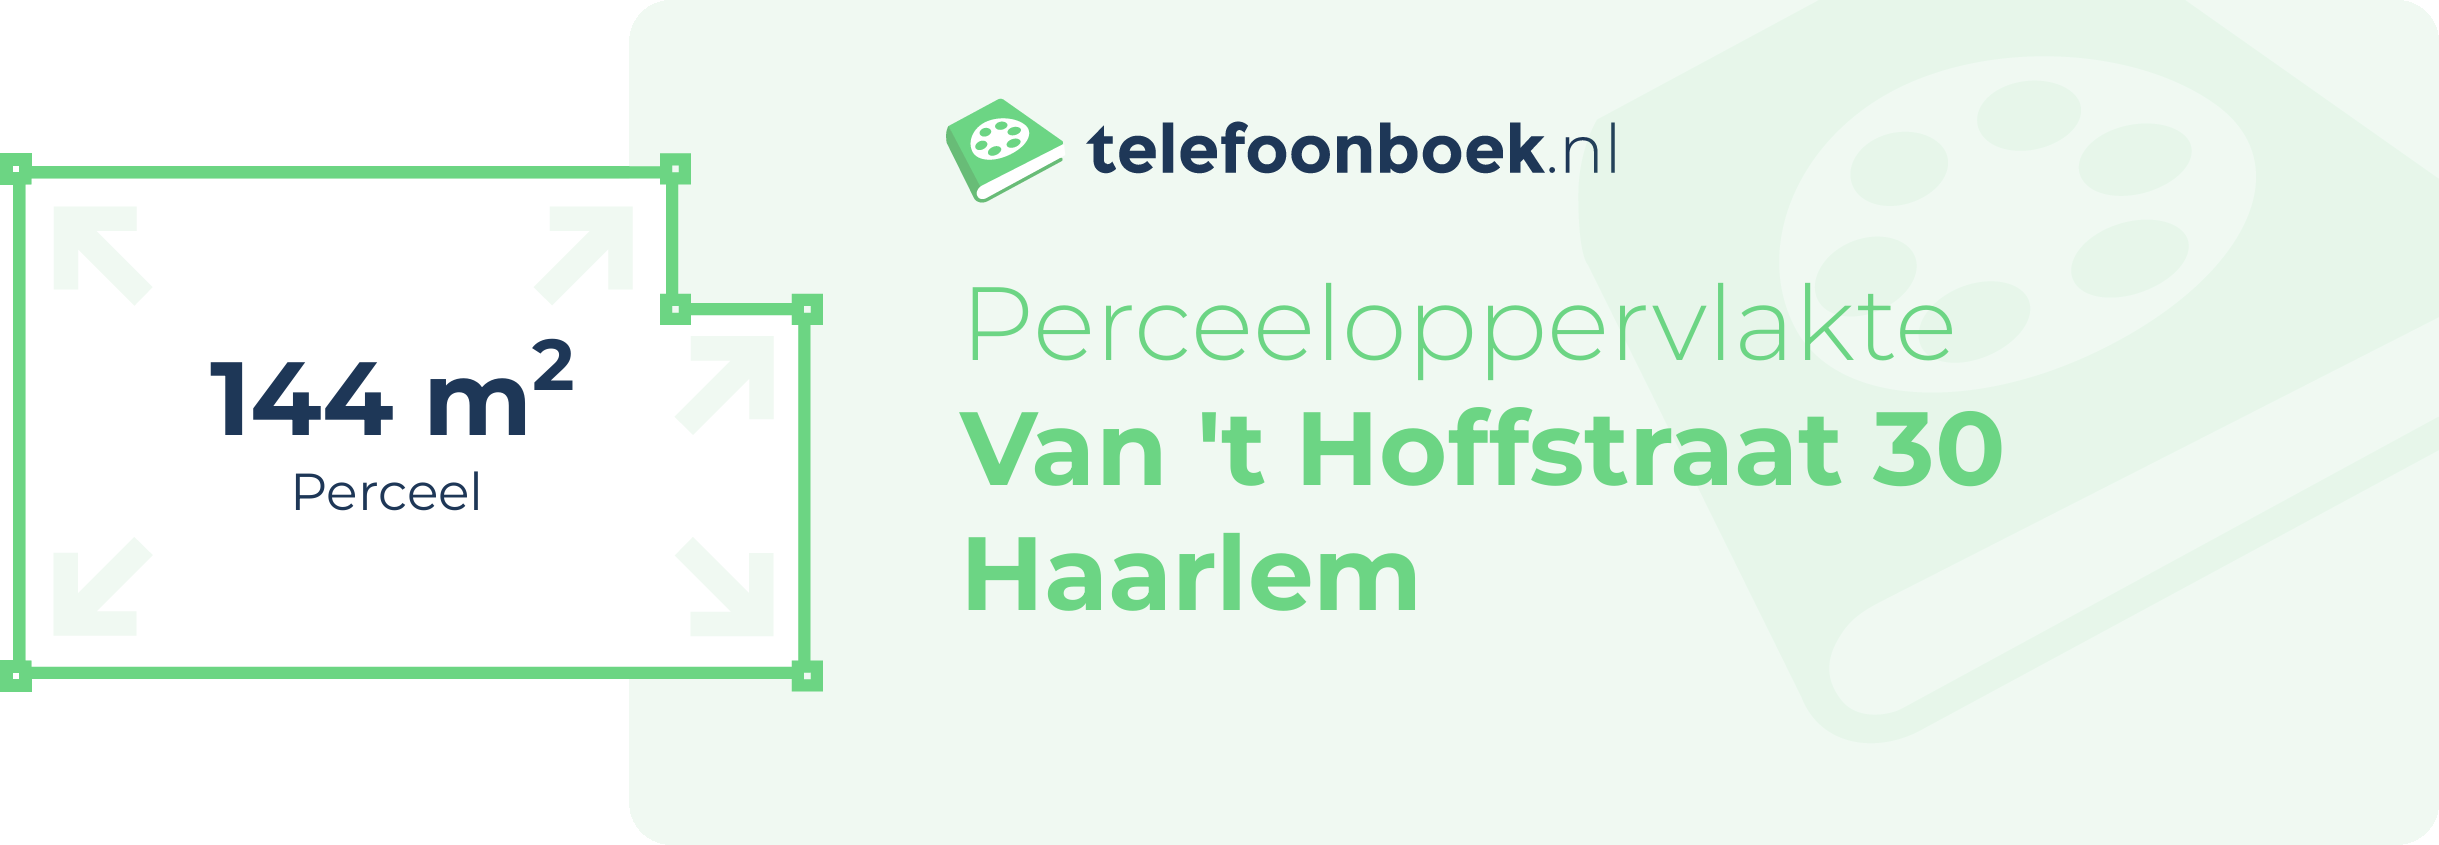 Perceeloppervlakte Van 't Hoffstraat 30 Haarlem